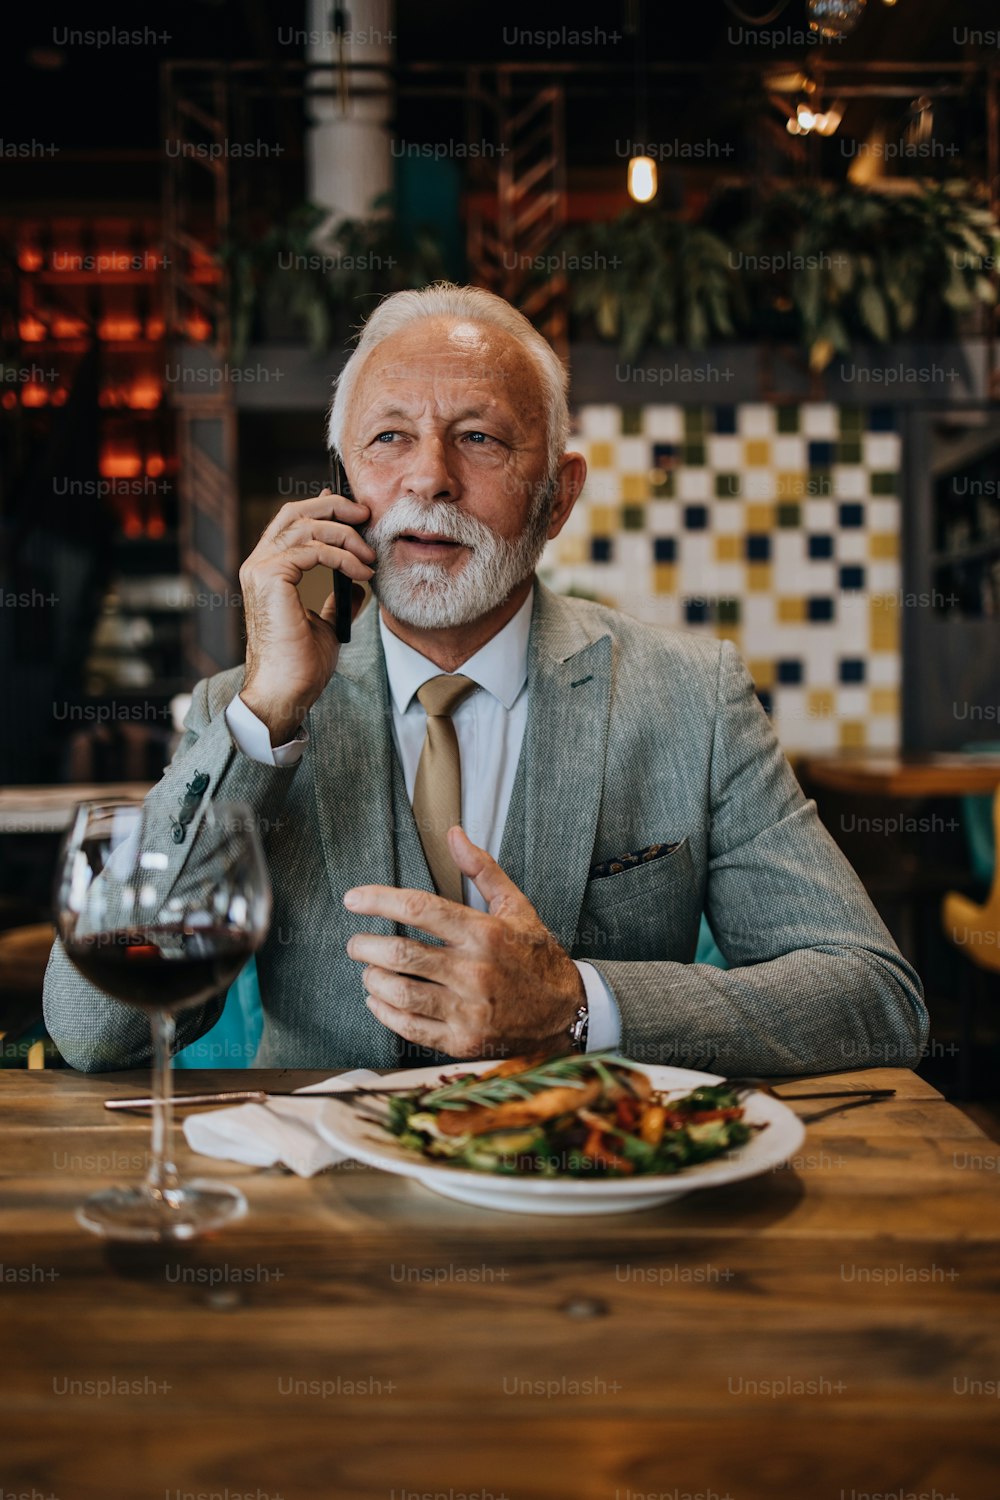 Heureux et beau homme d’affaires senior assis dans un restaurant et attendant le déjeuner. Il utilise un téléphone intelligent et parle avec quelqu’un. Concept de style de vie pour les personnes âgées d’affaires.